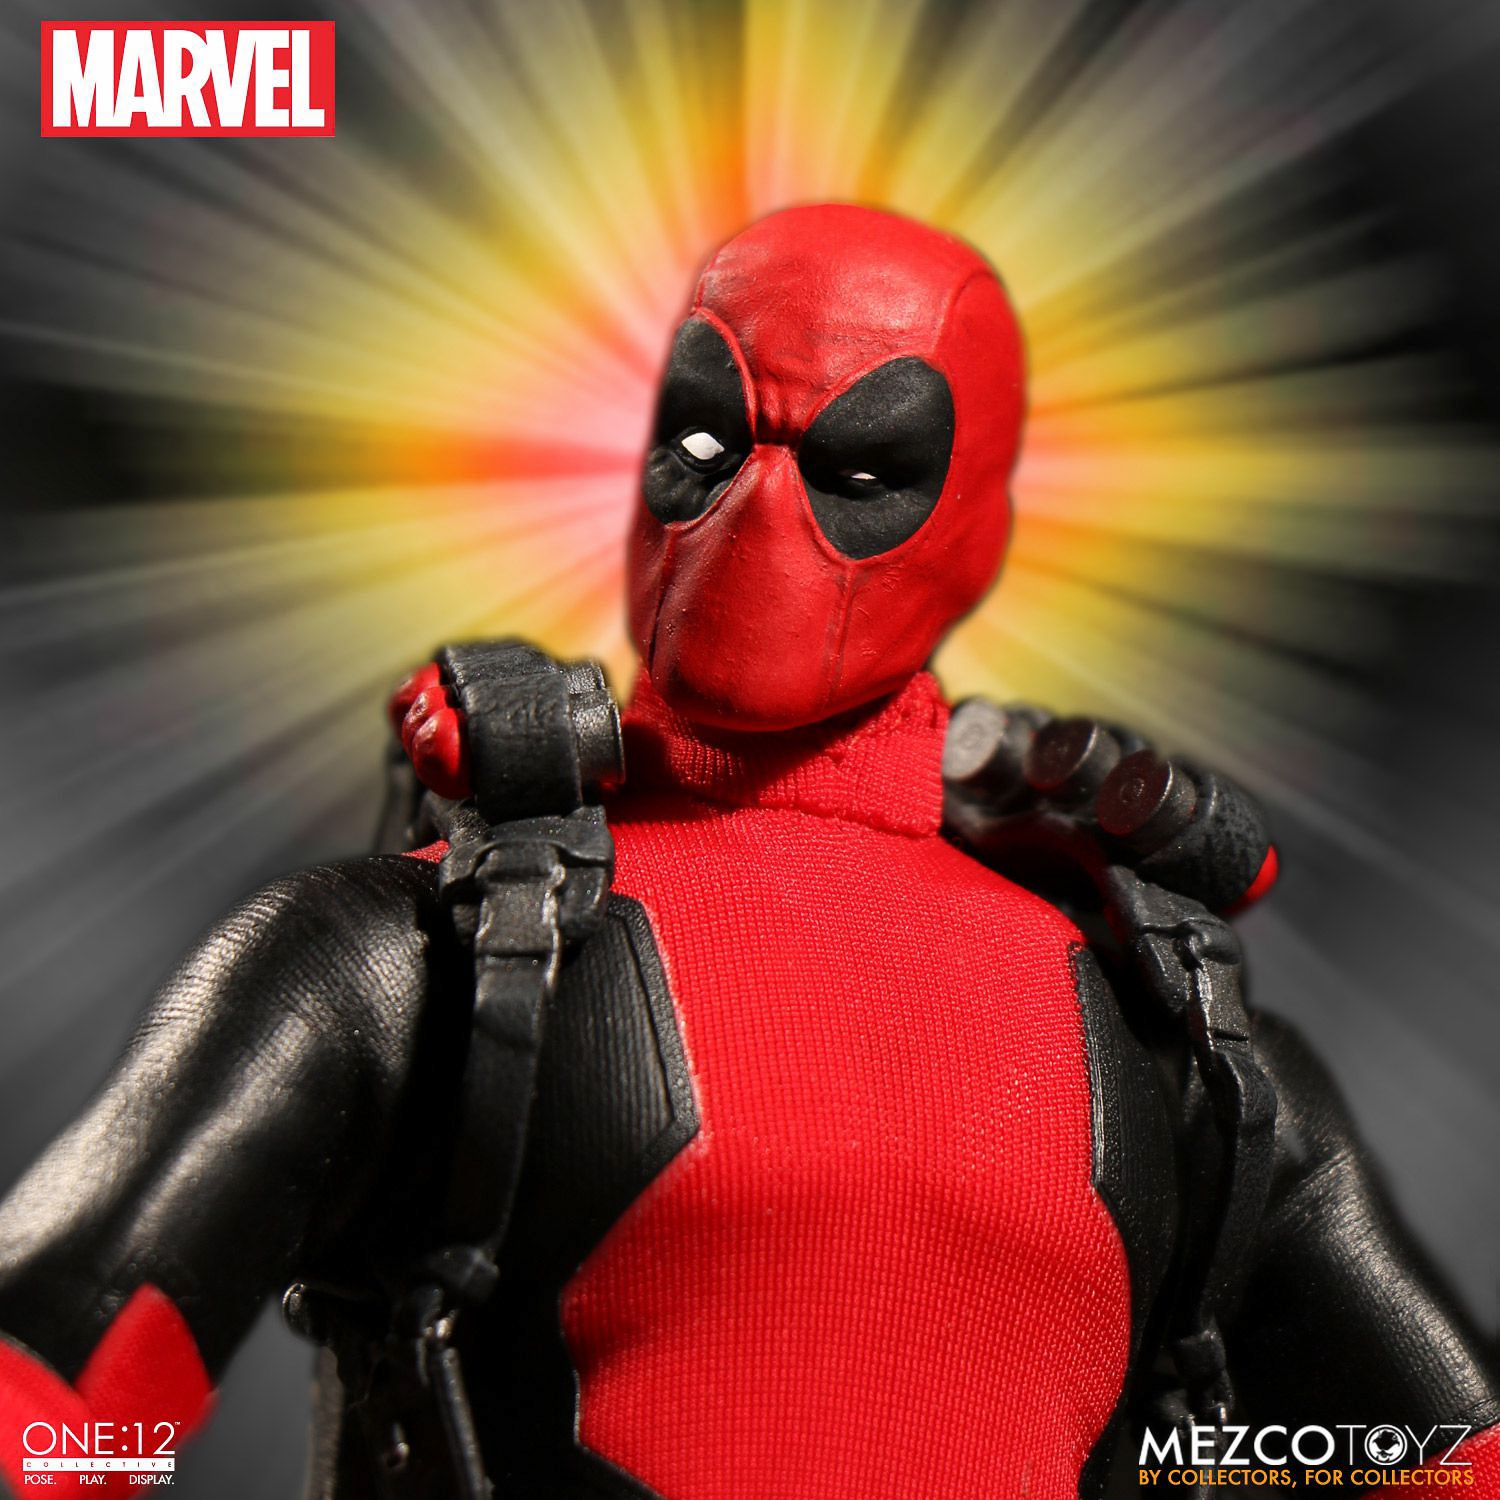 Mezco-Toyz-Marvel-Comics-Deadpool-One-12-002.jpg